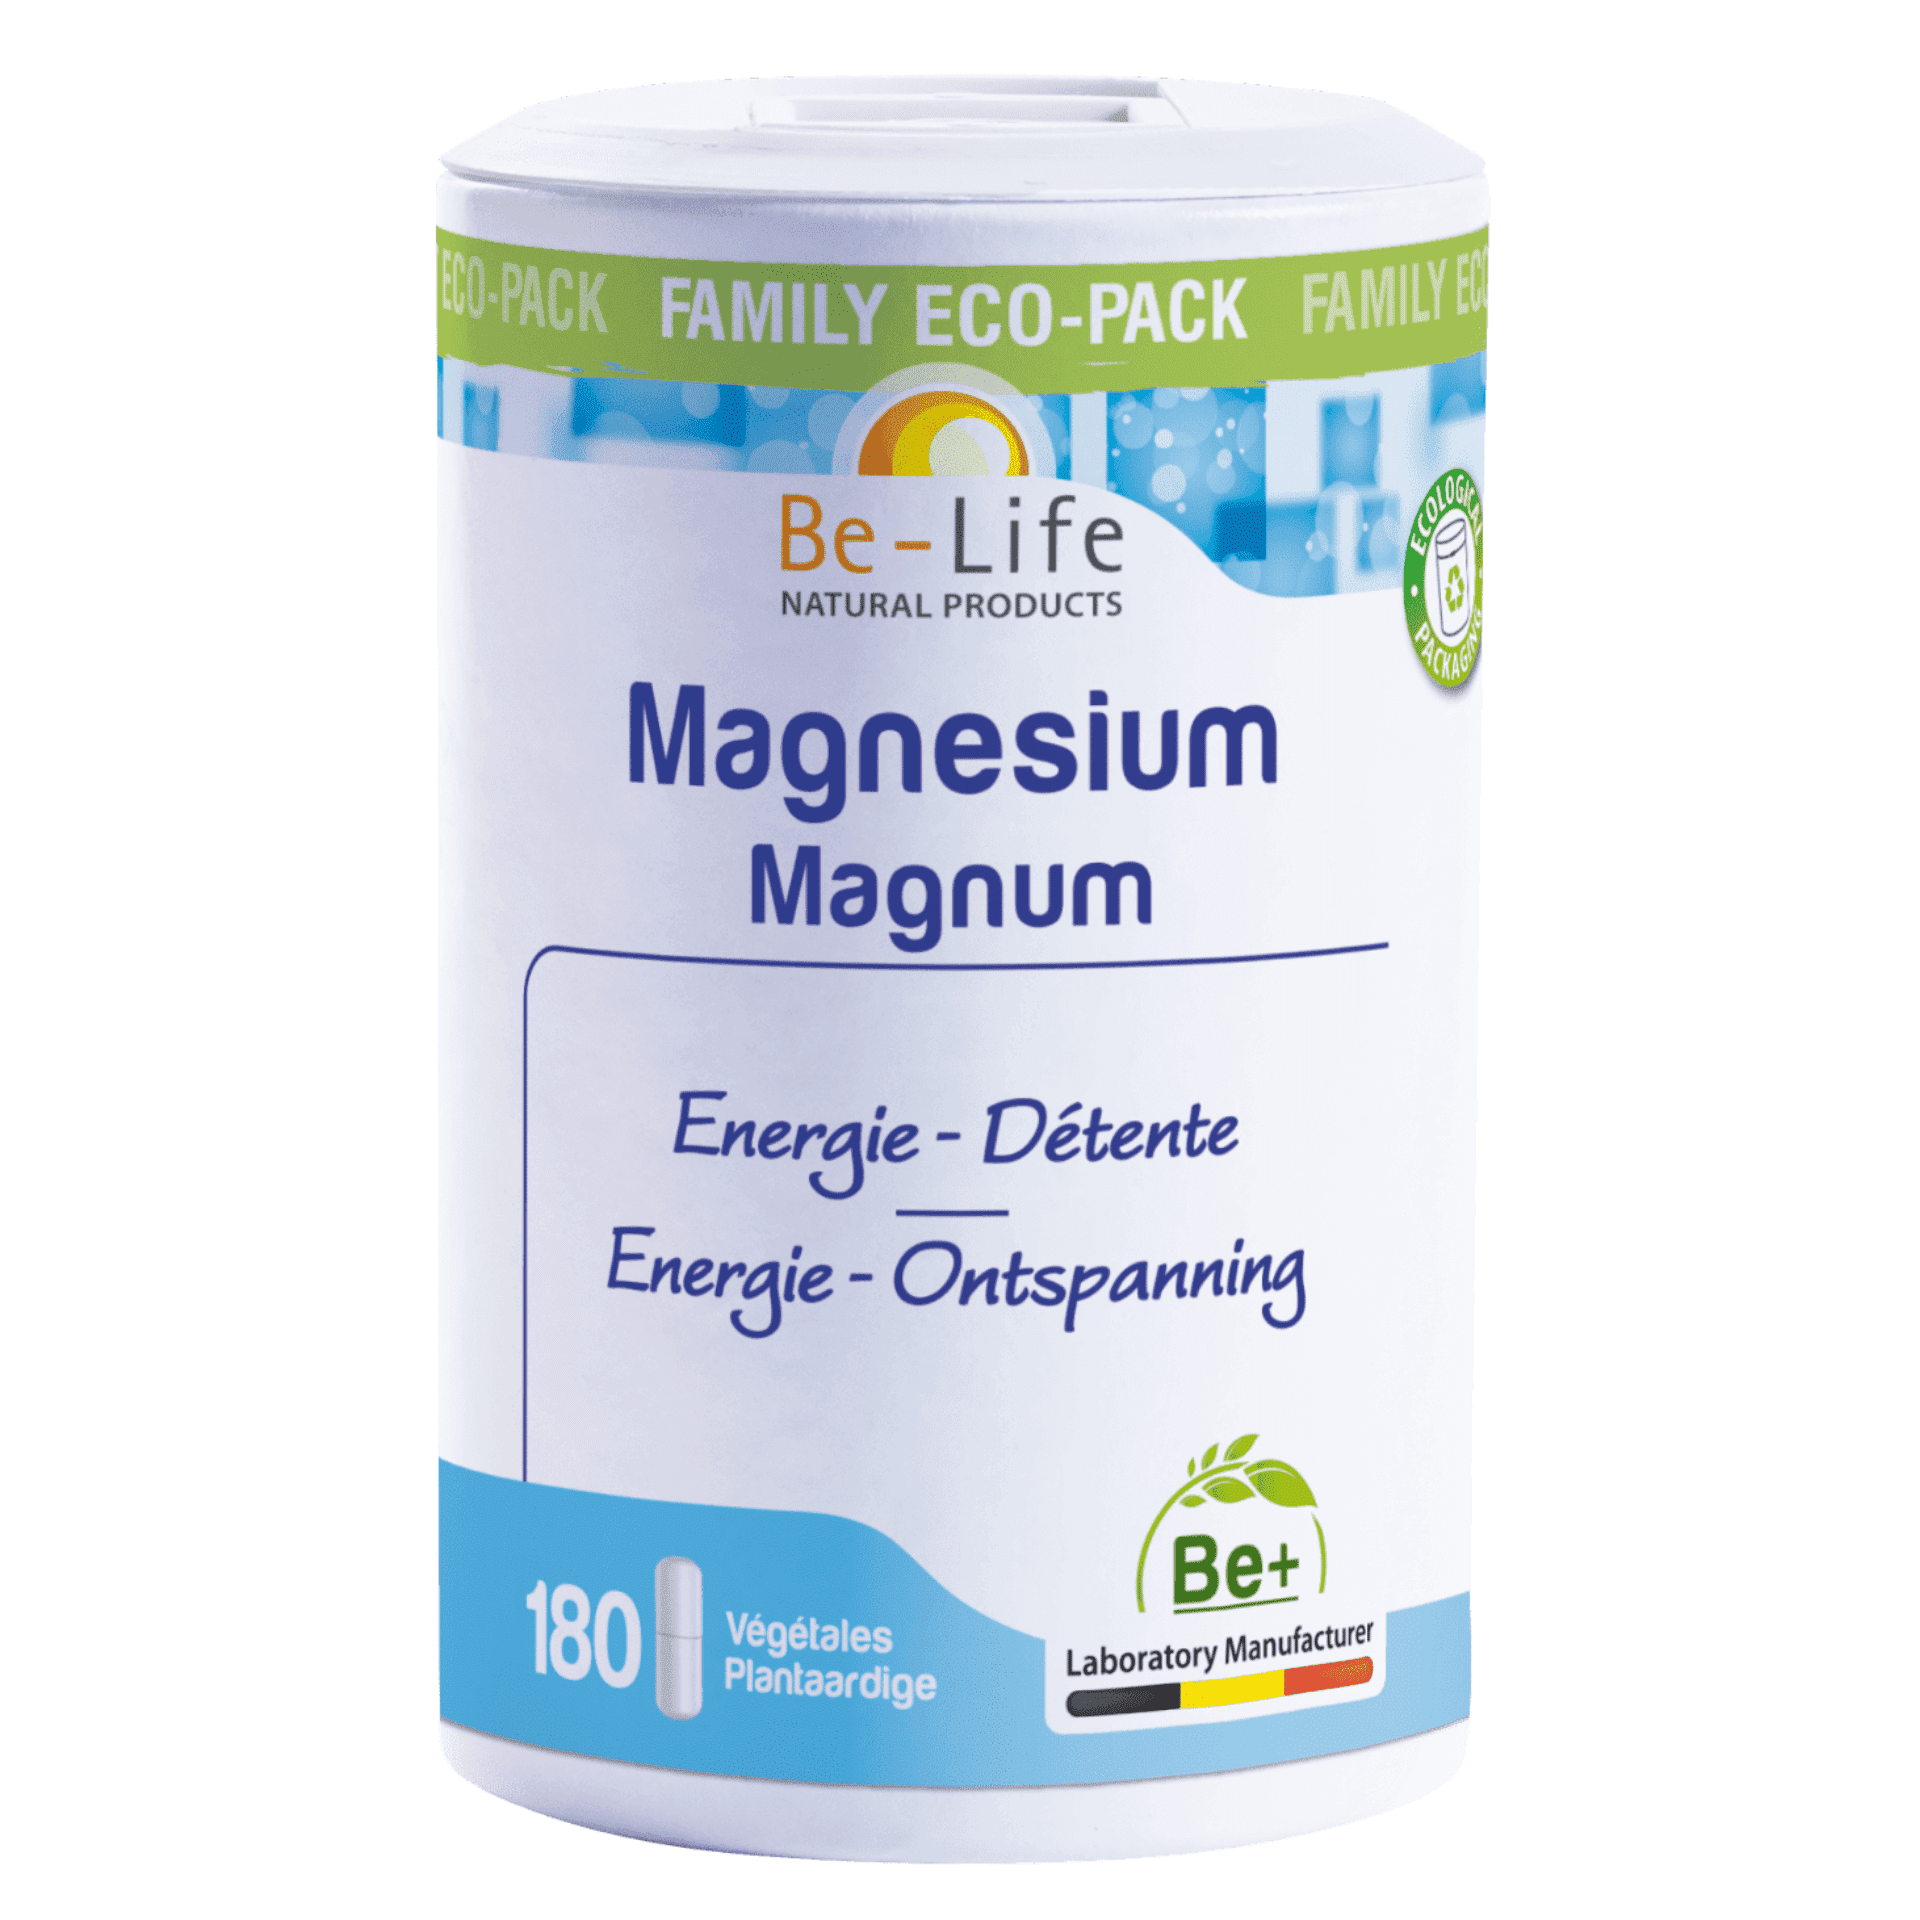 Be Life Magnesium Magnum 180 capsules